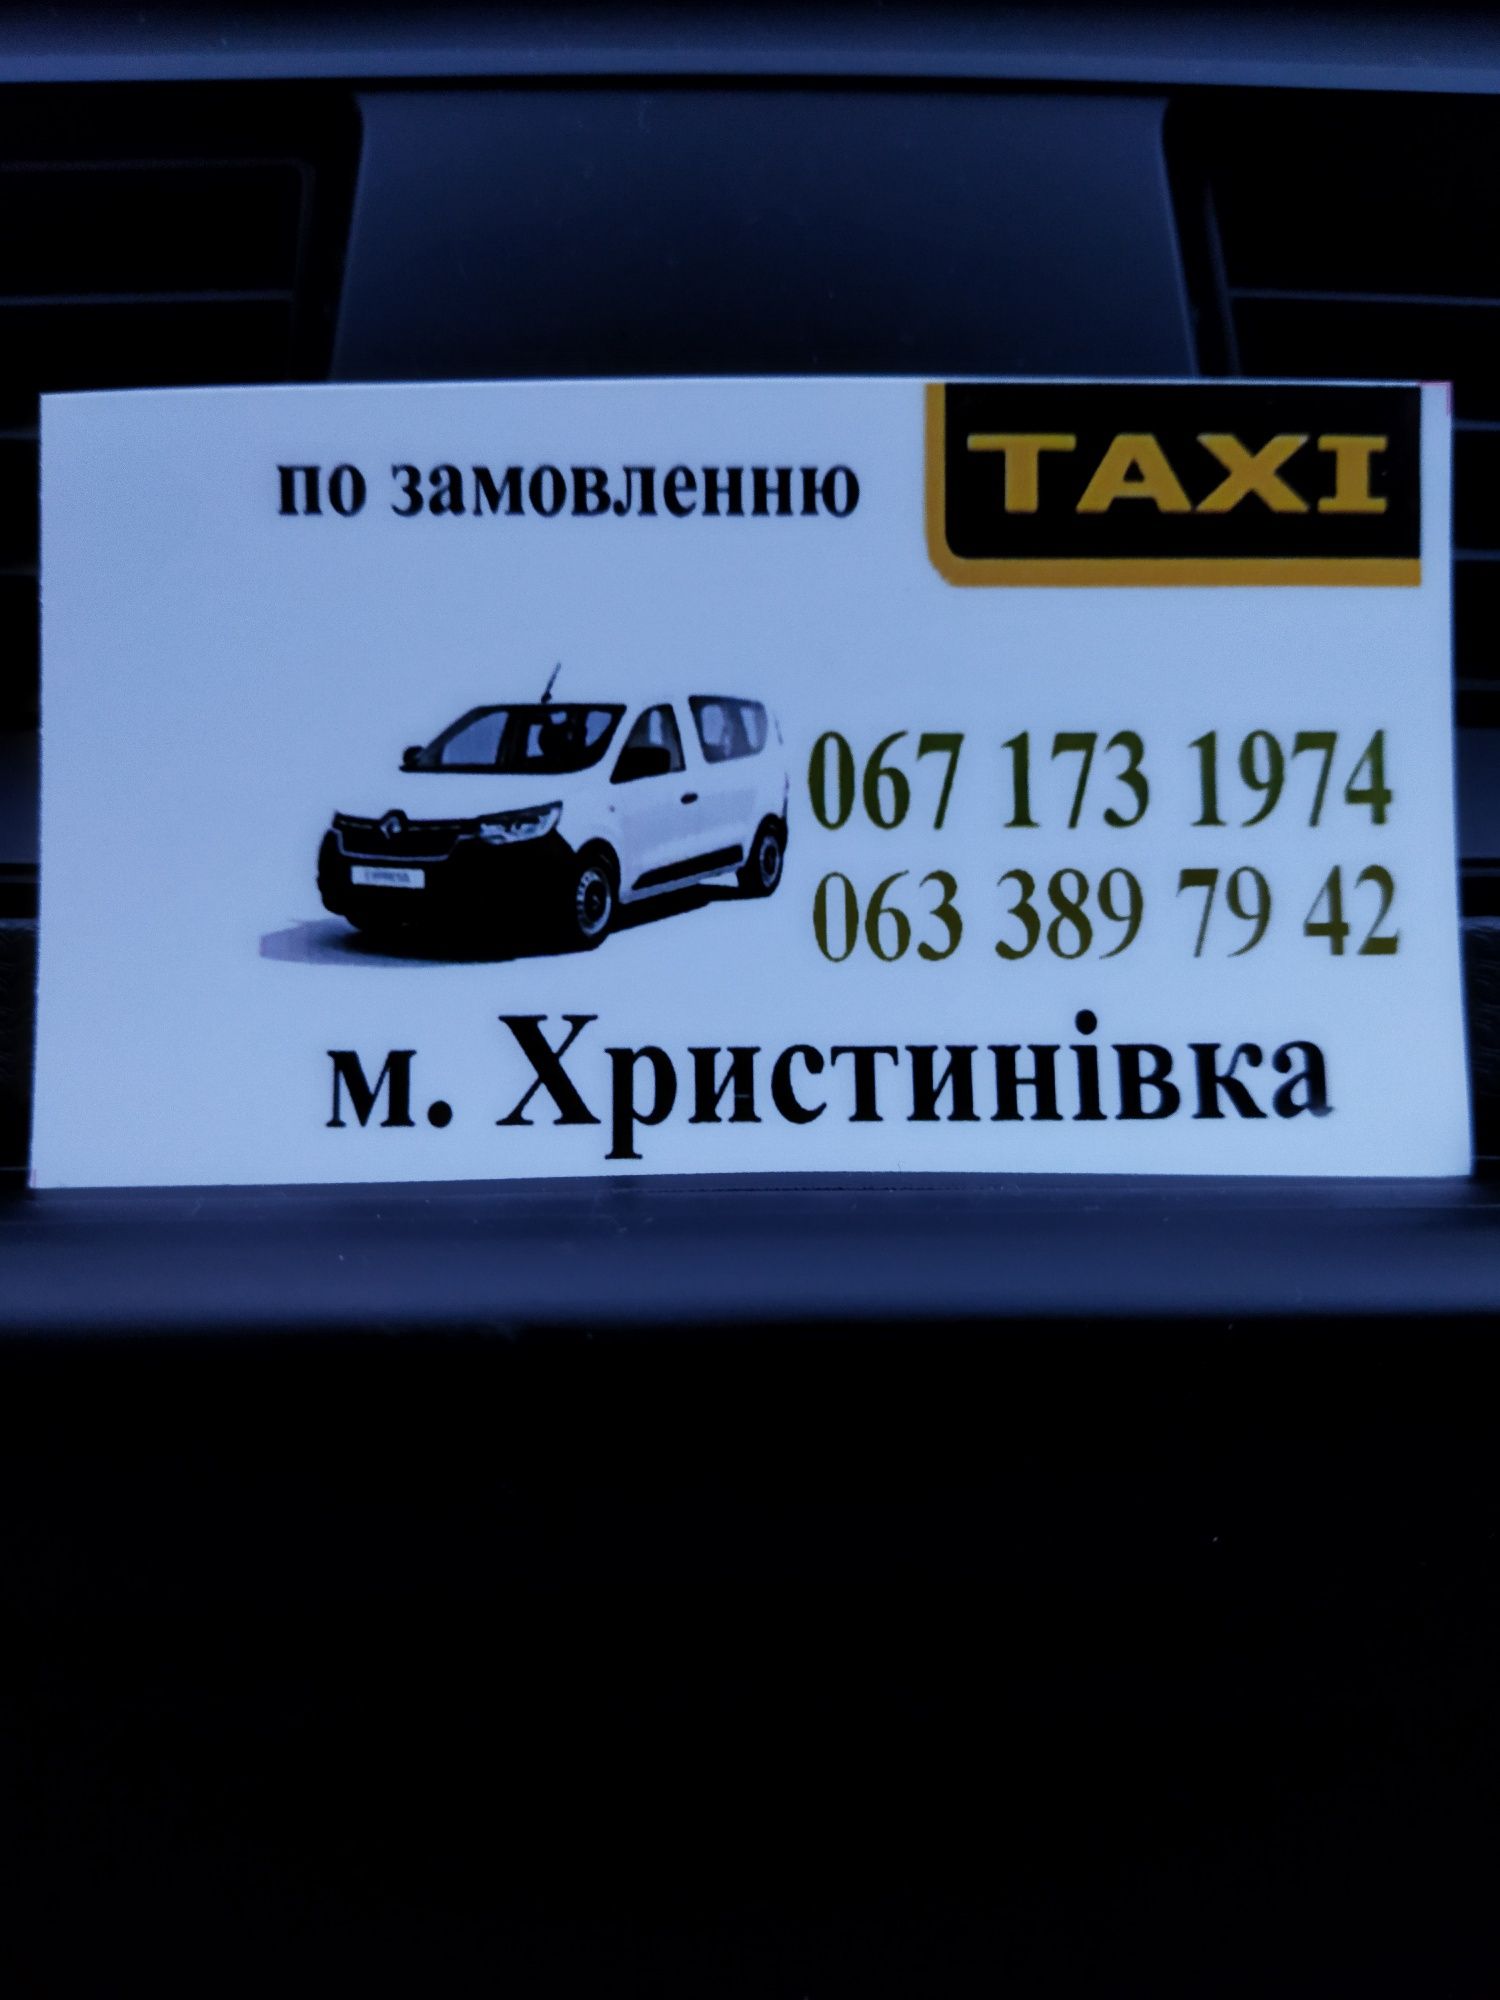 Послуги таксі, доставка. Районні, міські, міжміські перевезення